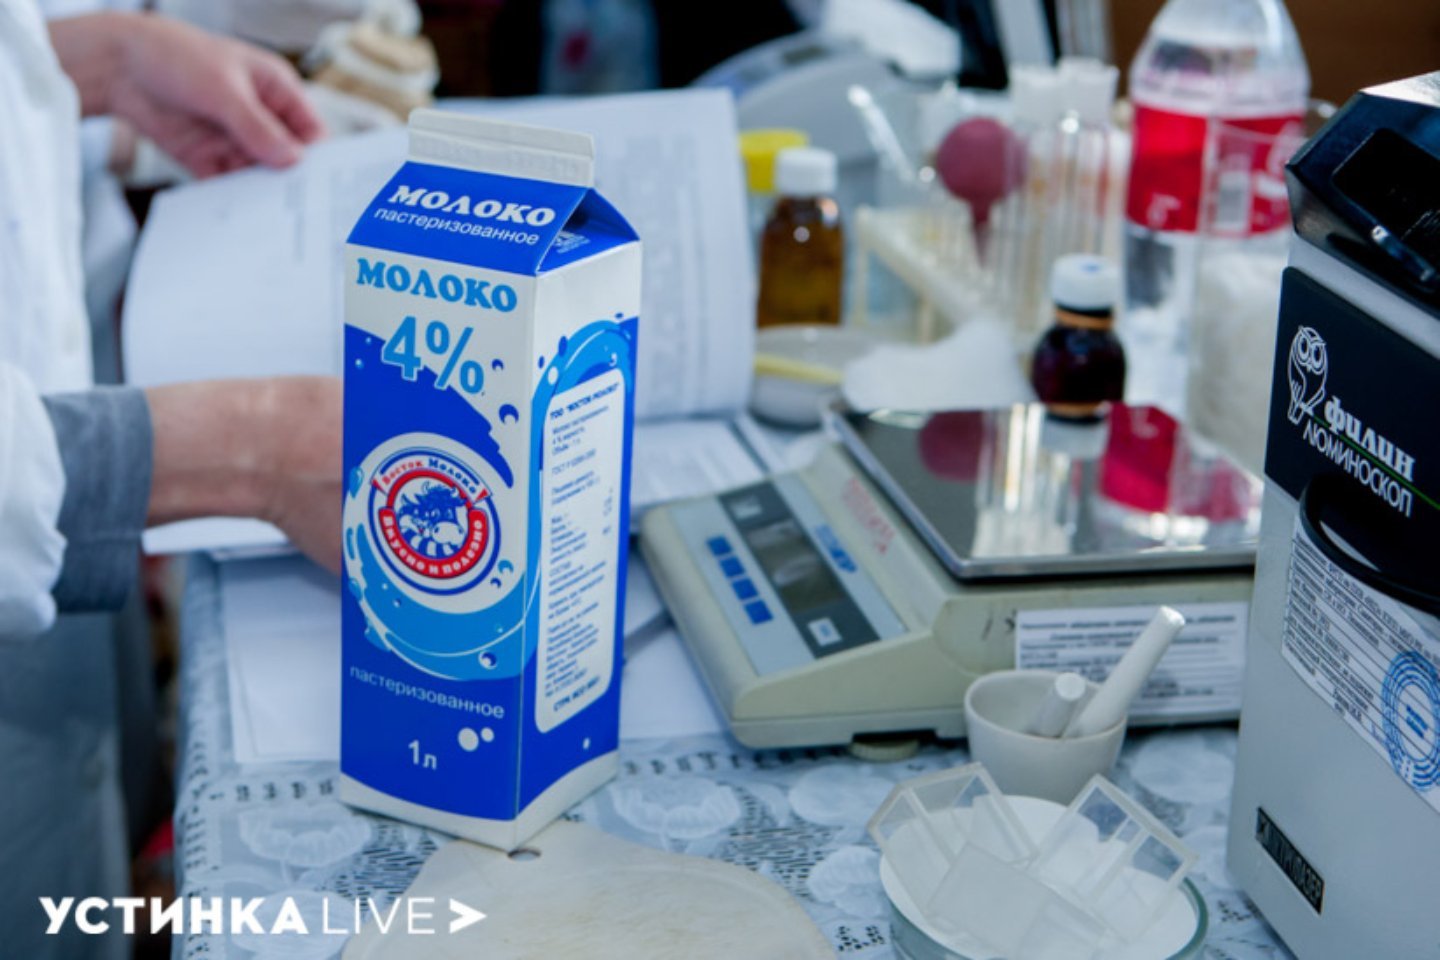 Новости Казахстана / Общество в Казахстане / "Не совсем молоко": требования к маркировке продукта в РК ужесточили